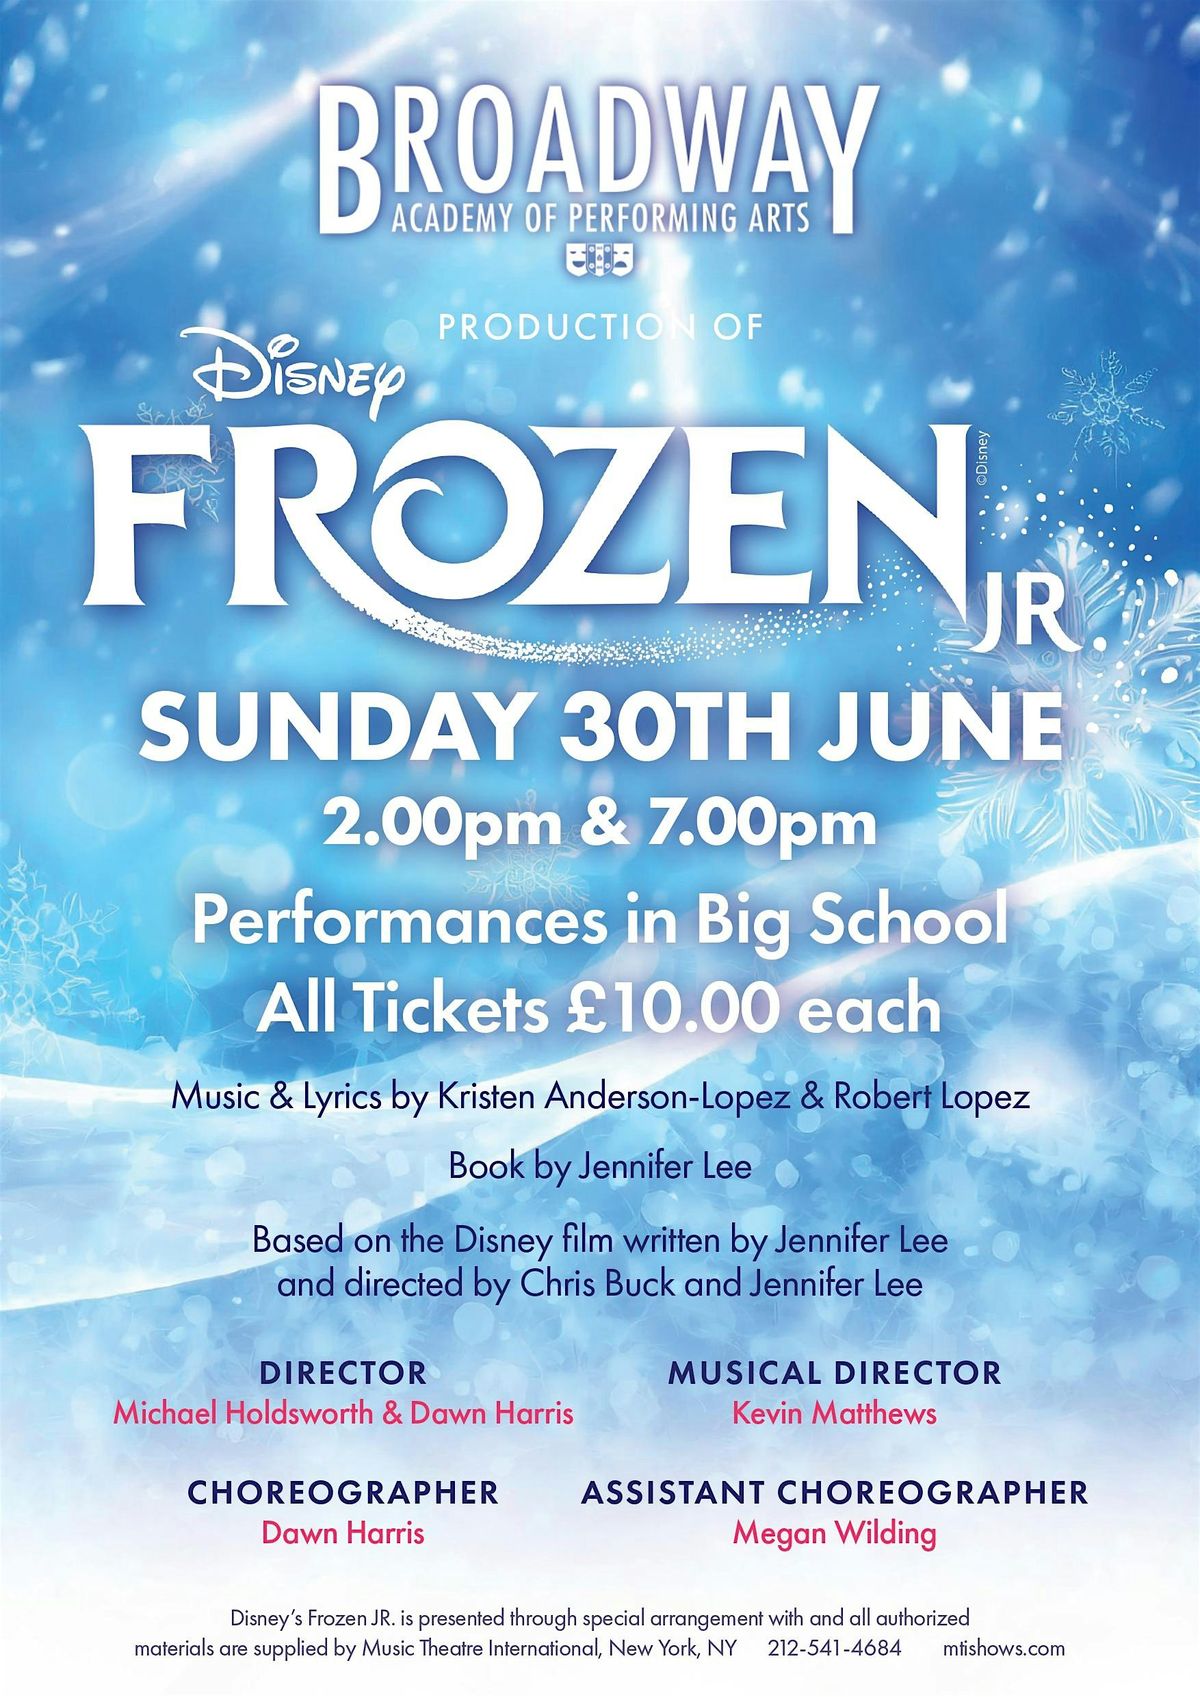 Broadway Academy of Performing Arts Presents Disney's Frozen Jr.